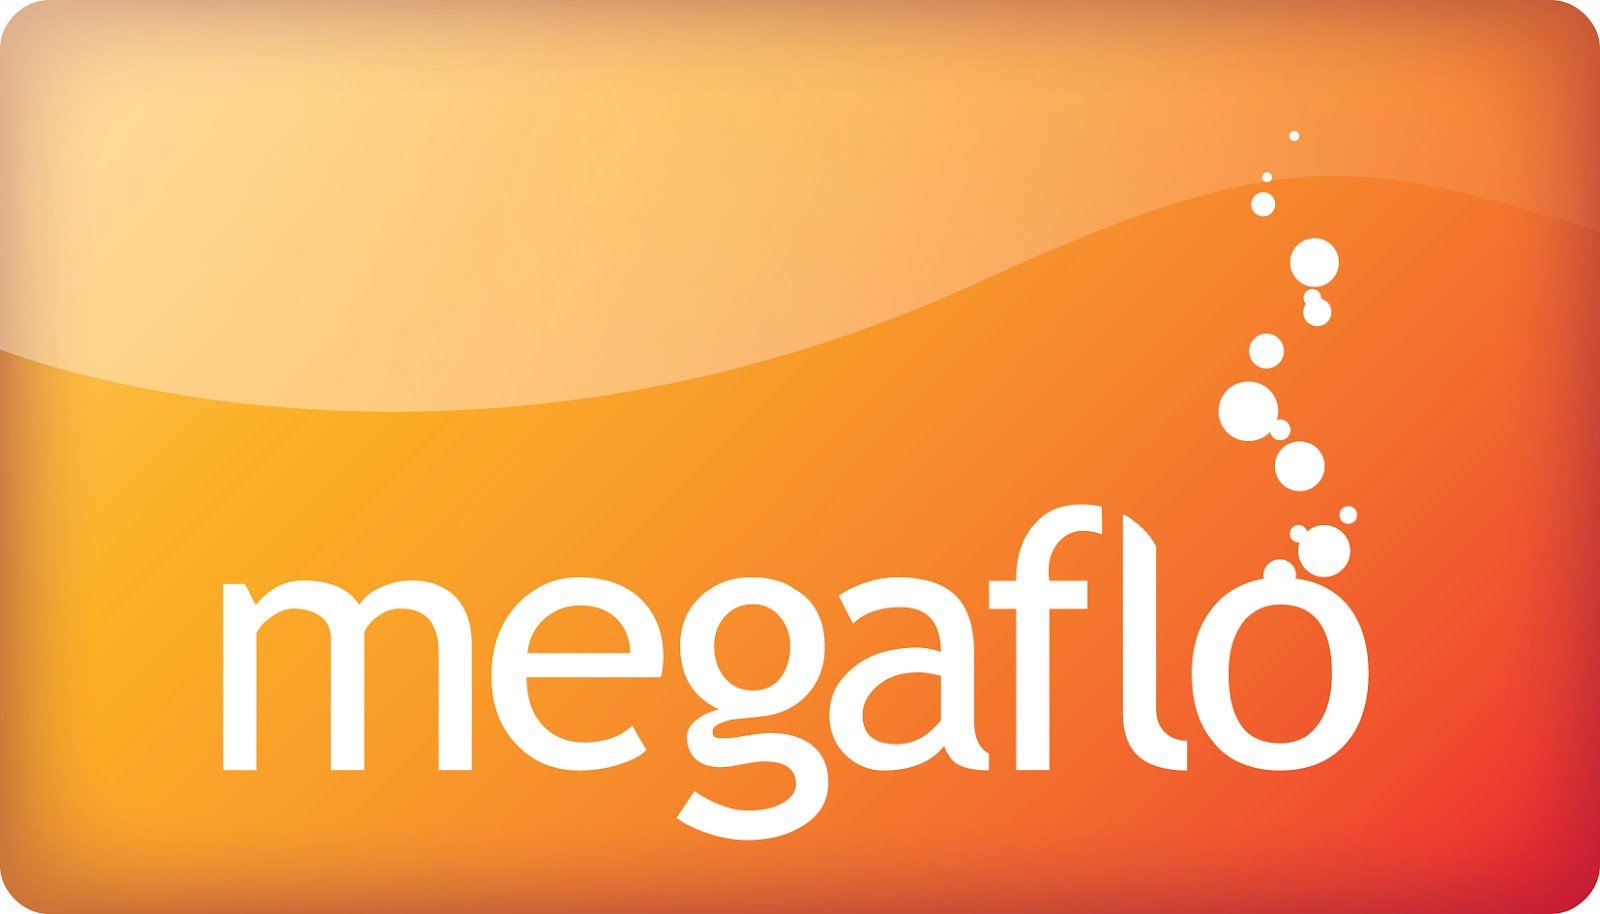 Megaflo